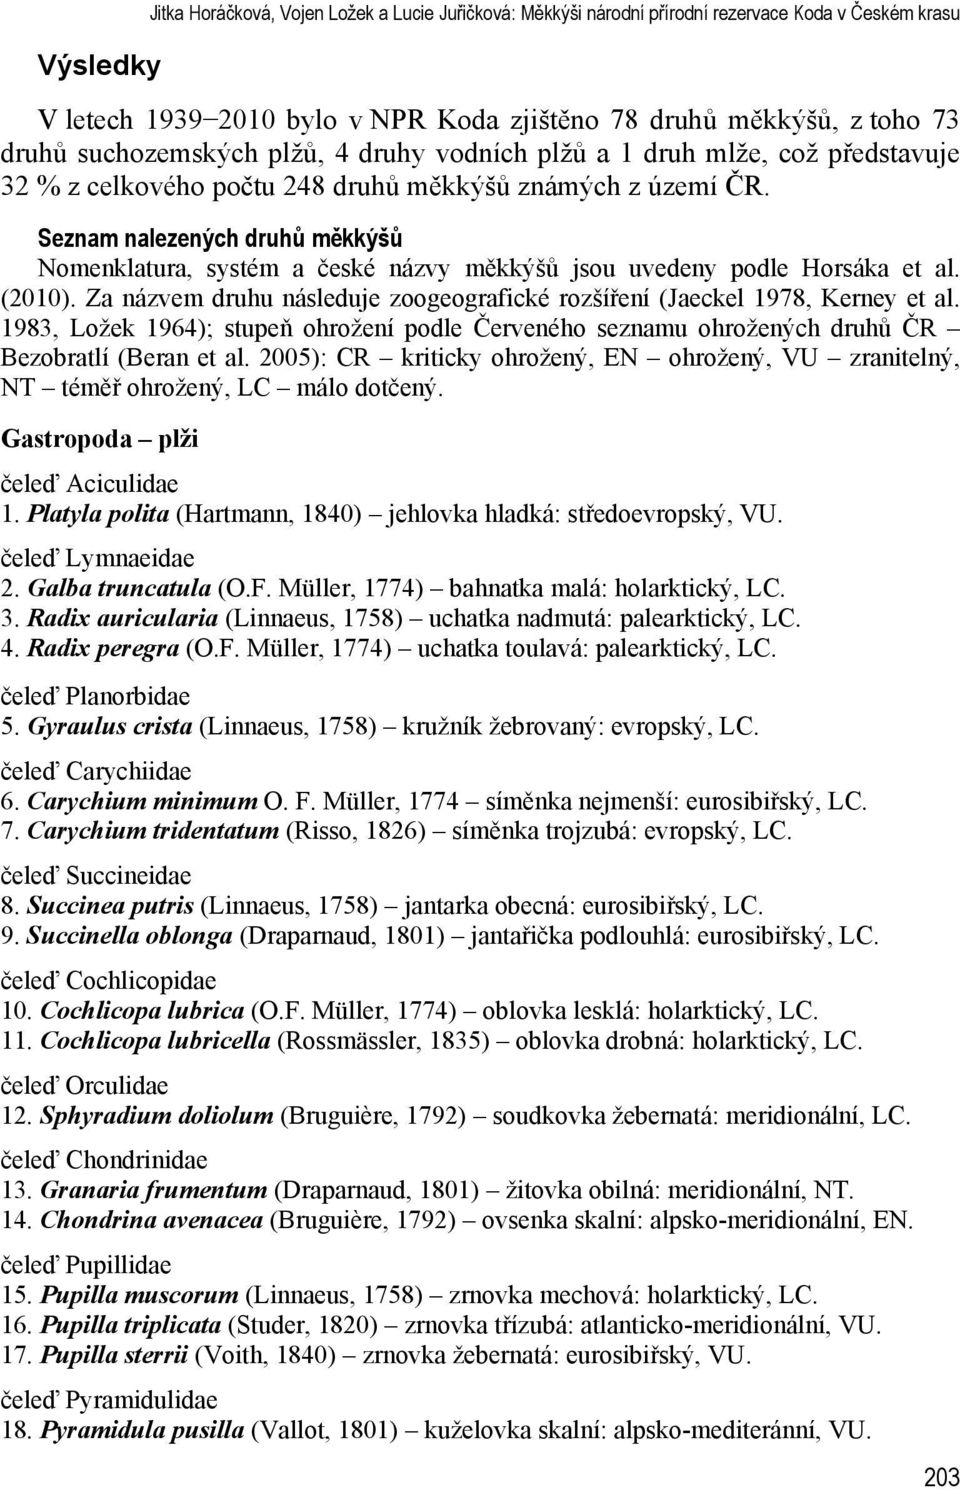 Seznam nalezených druh m kkýš Nomenklatura, systém a české názvy m kkýš jsou uvedeny podle Horsáka et al. (2010). Za názvem druhu následuje zoogeografické rozší ení (Jaeckel 1978, Kerney et al.